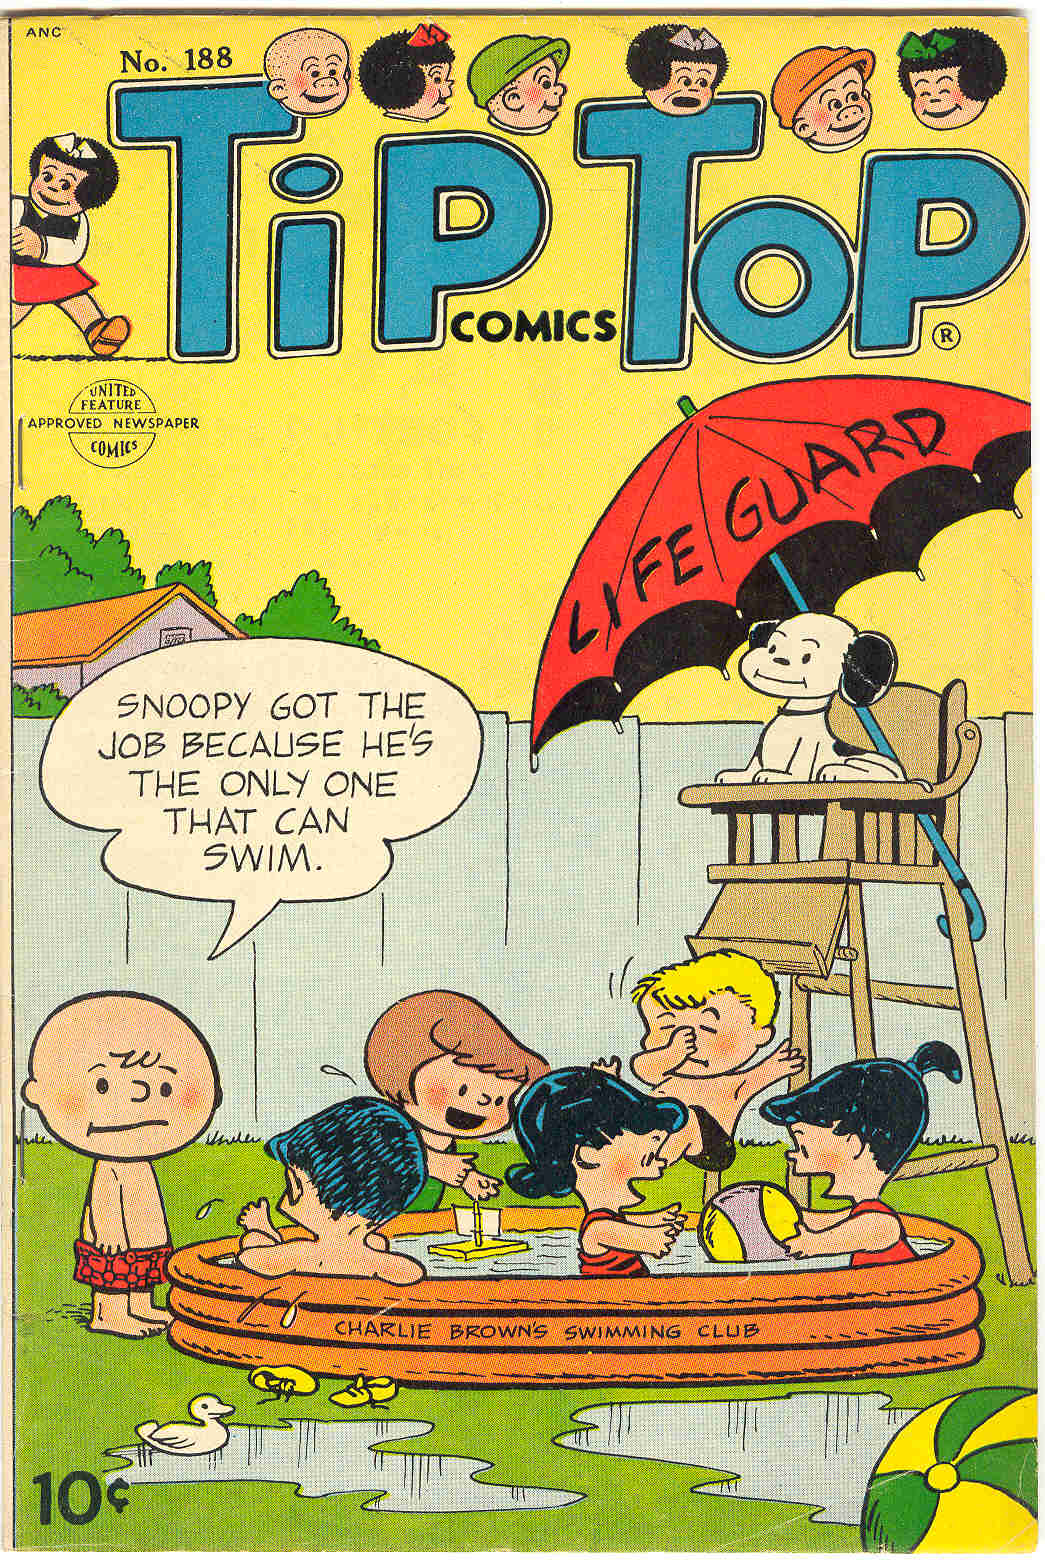 Timely Atlas Comics OT Peanuts A Comic Book History